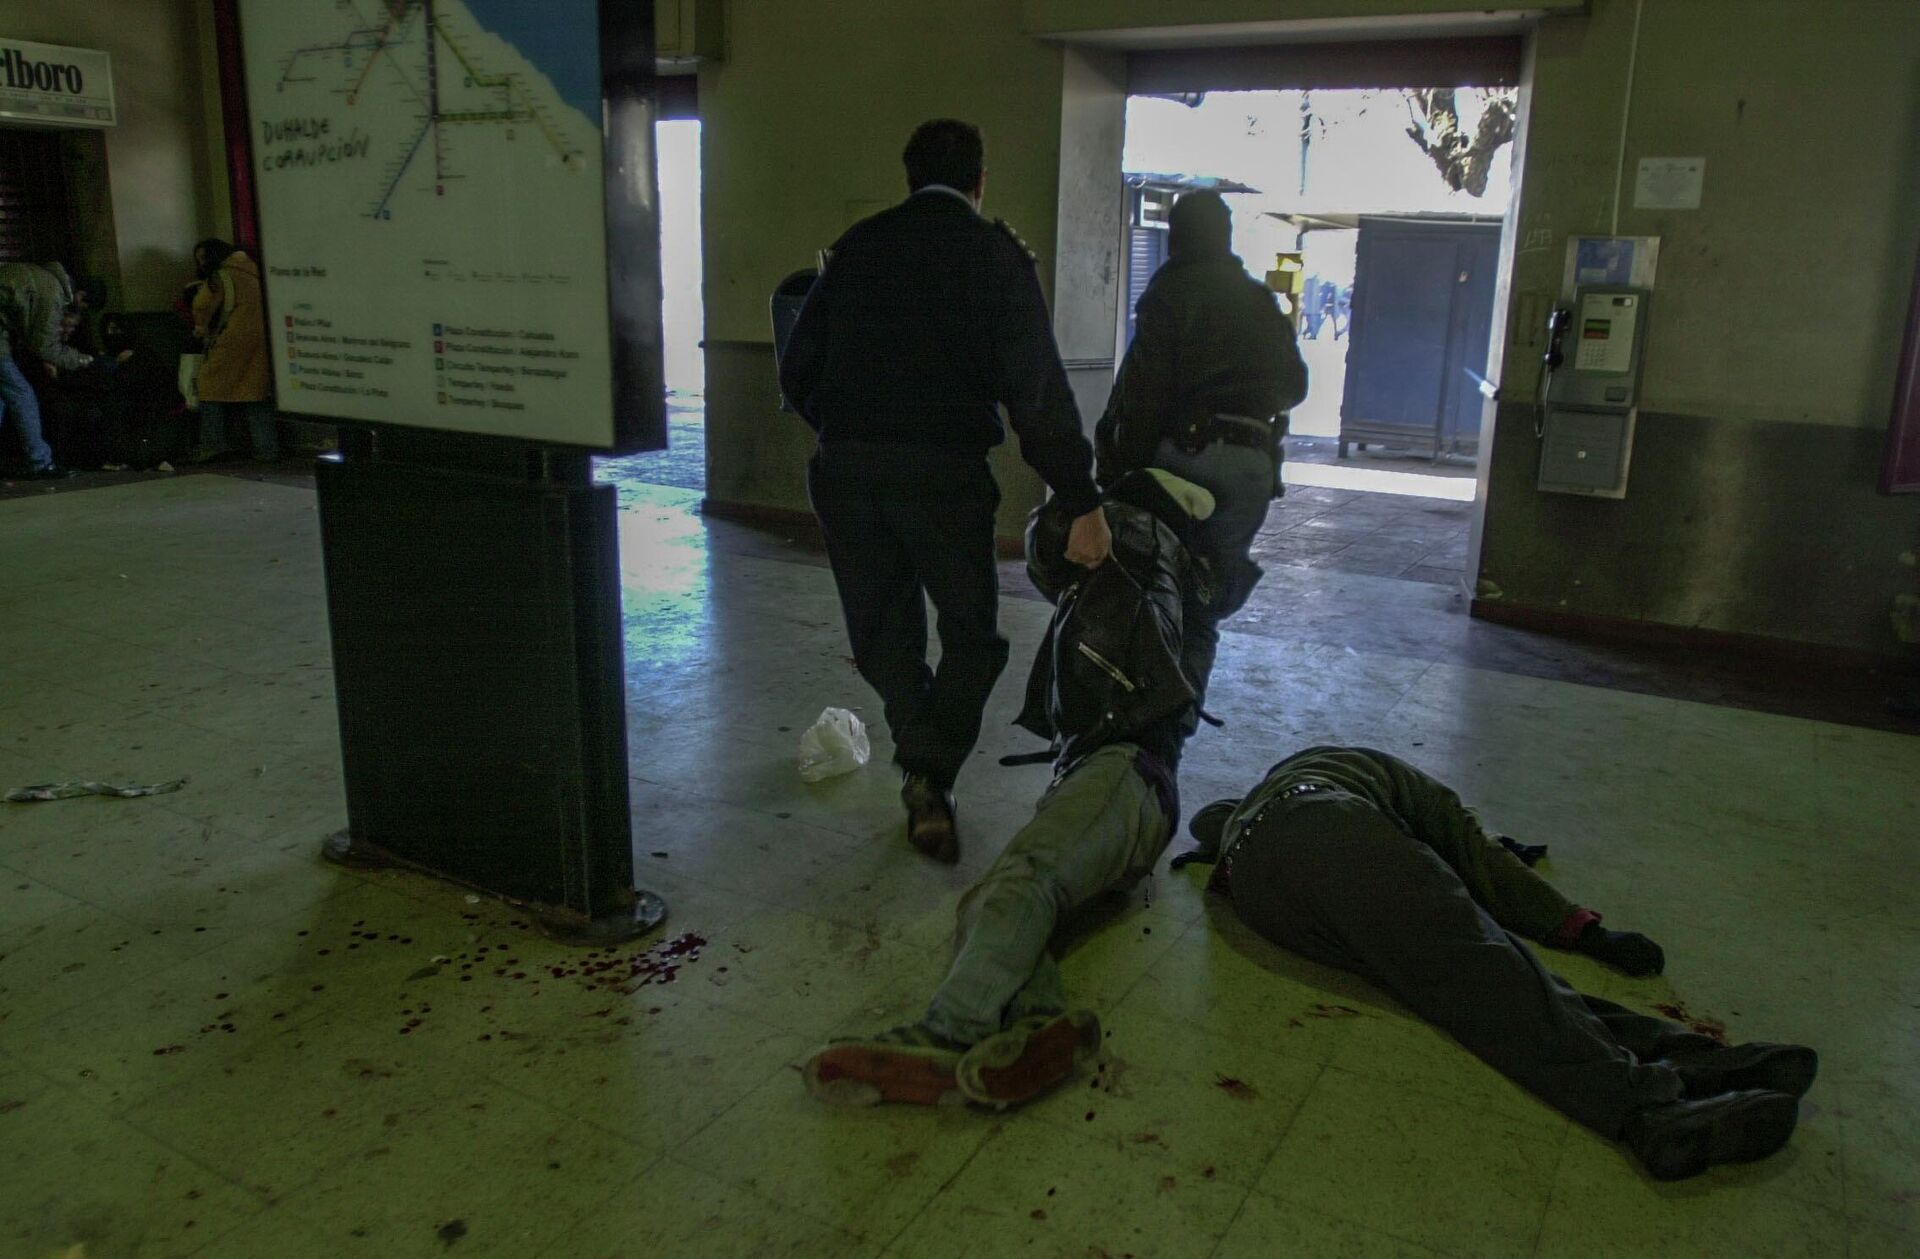 Darío Santillán es retirado herido de la Estación Avellaneda, mientras Maximiliano Kosteki yace asesinado en el suelo. Avellaneda, provincia de Buenos Aires, 26/06/2002 - Sputnik Mundo, 1920, 24.06.2022